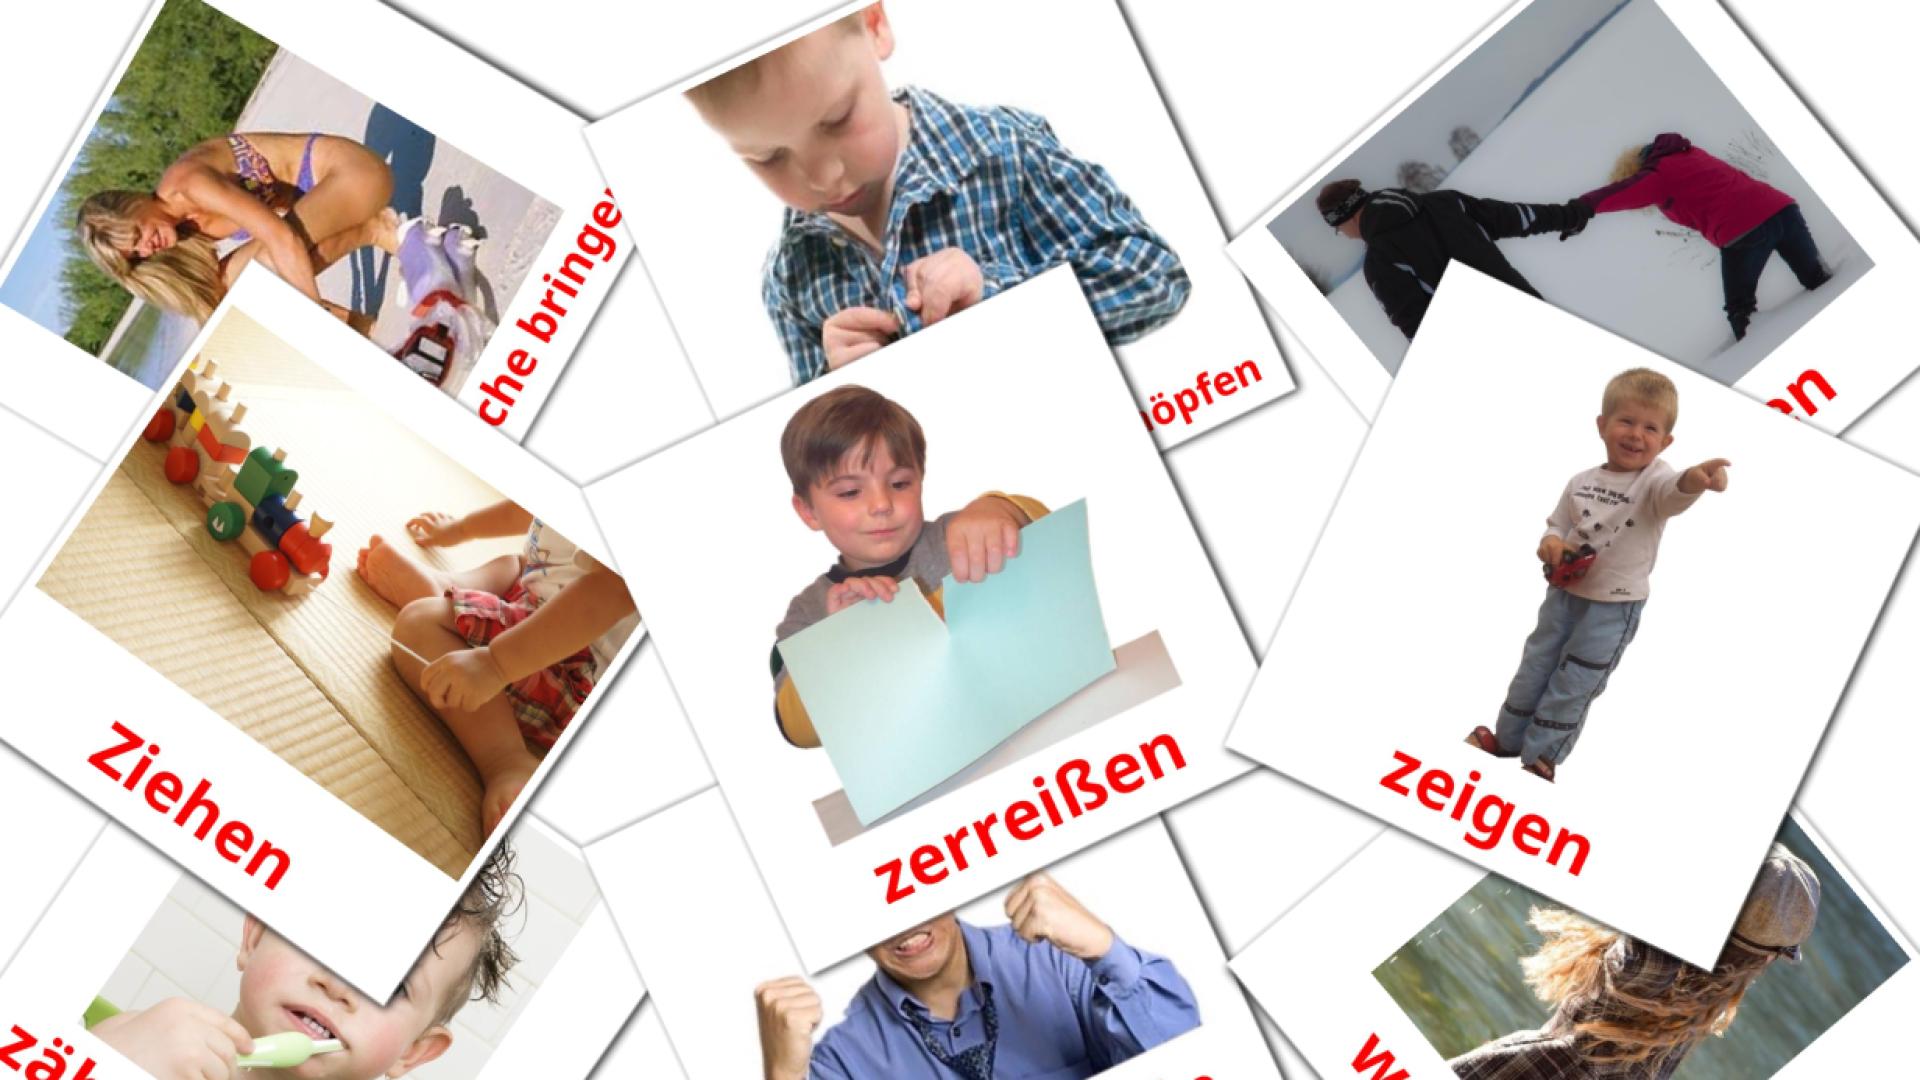 Verben Vocabulário em alemão Flashcards